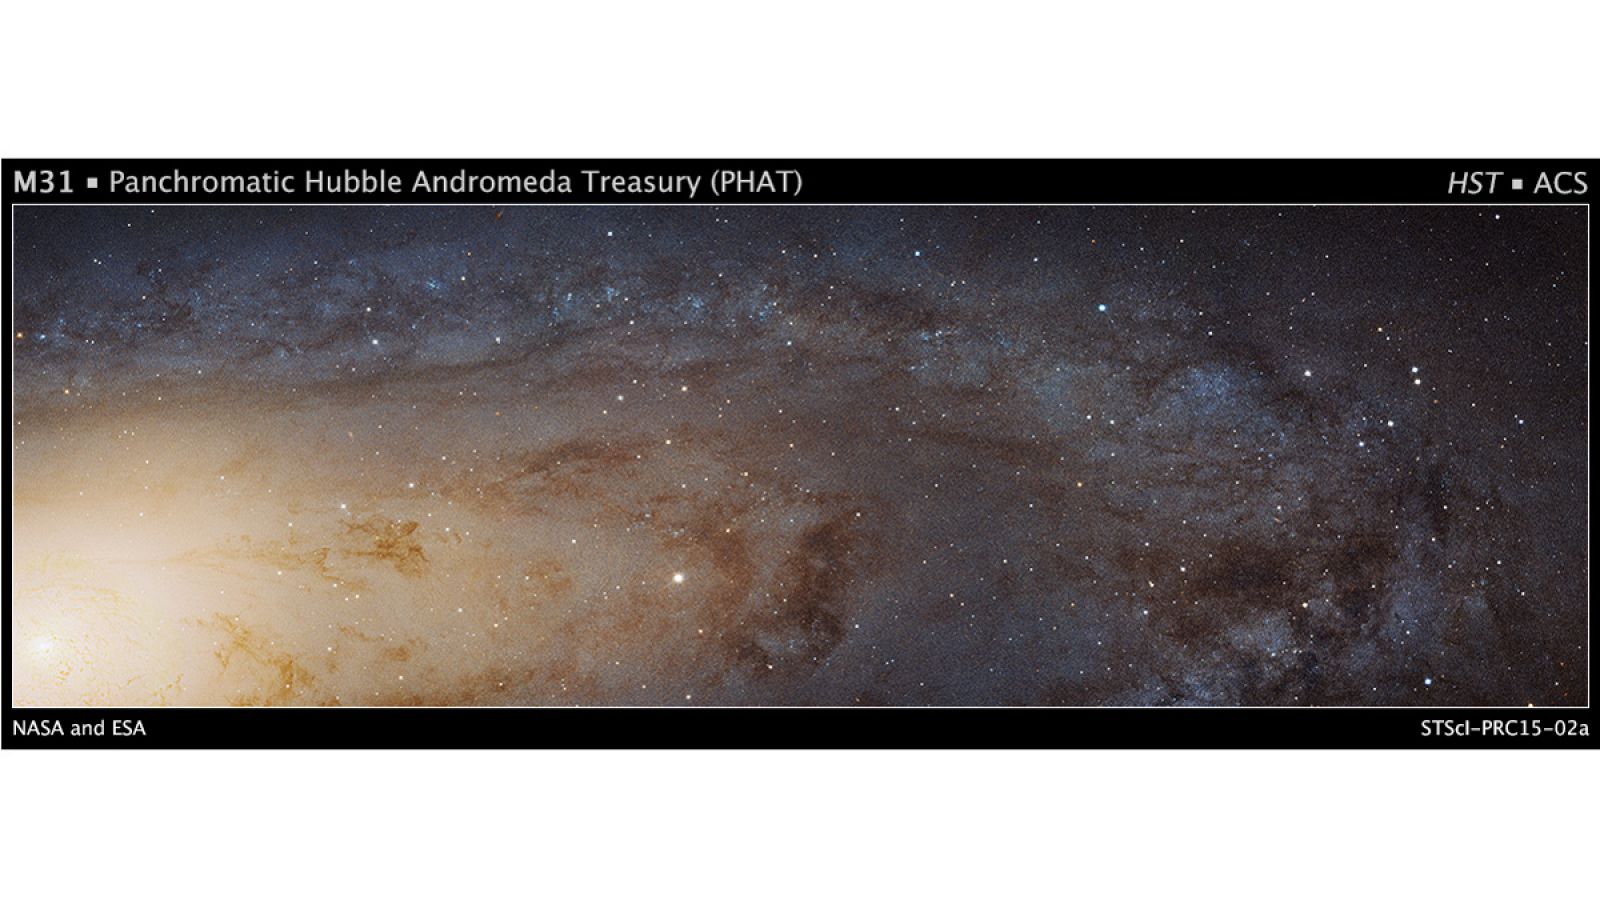 Esta imagen es una extensa vista desde arriba de una porción de la galaxia Andrómeda (M31)